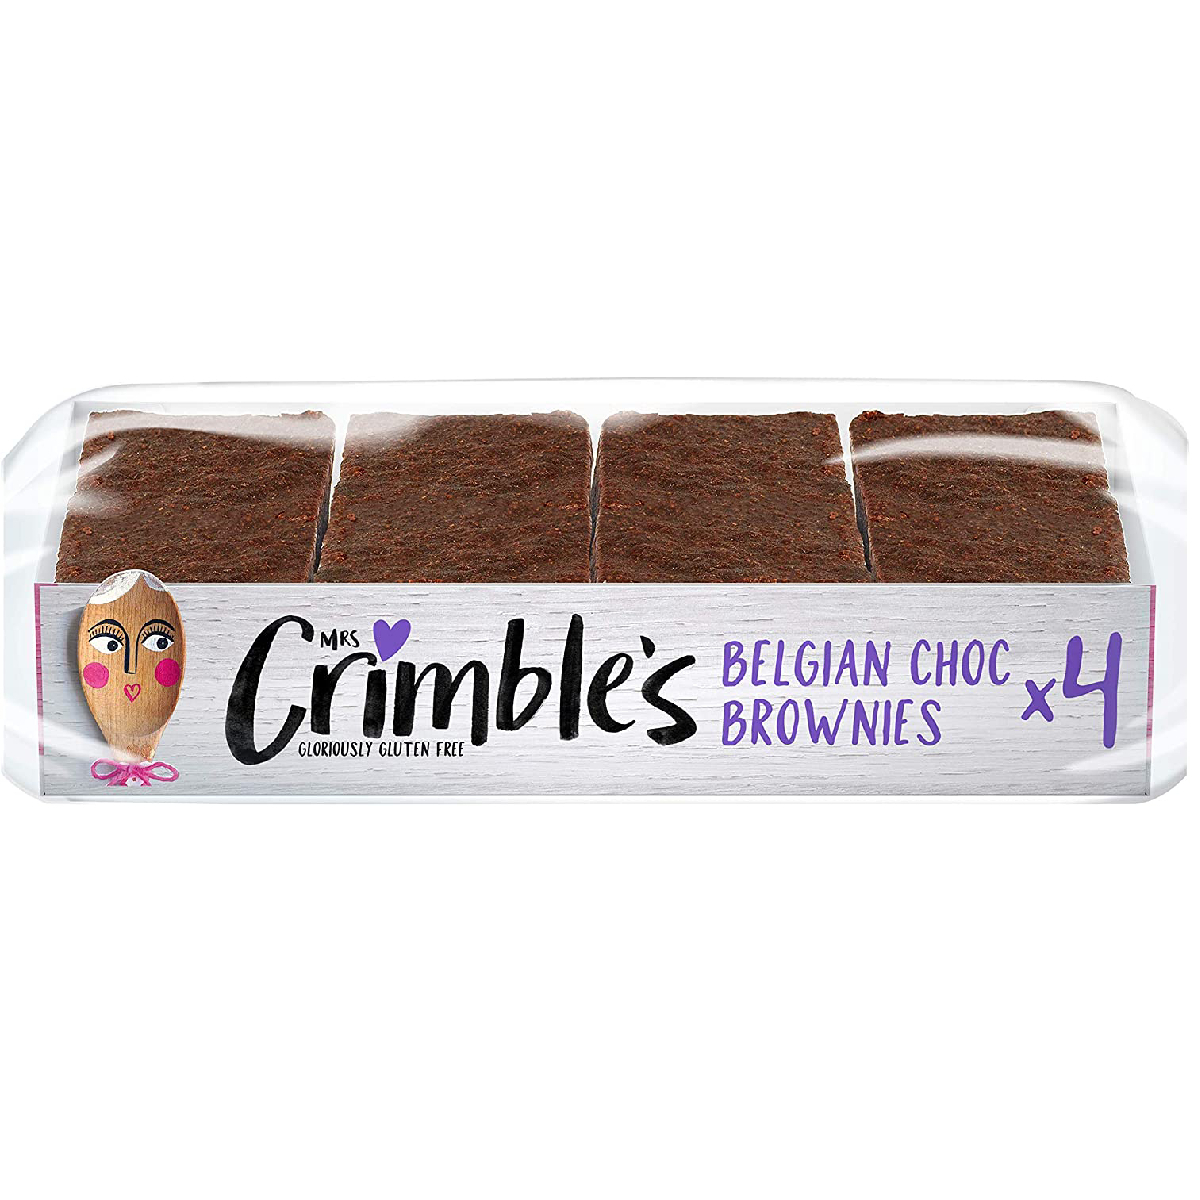 مسز كريمبلز براونيز الشوكولاتة البلجيكية الخالية من الغلوتين 190 جم